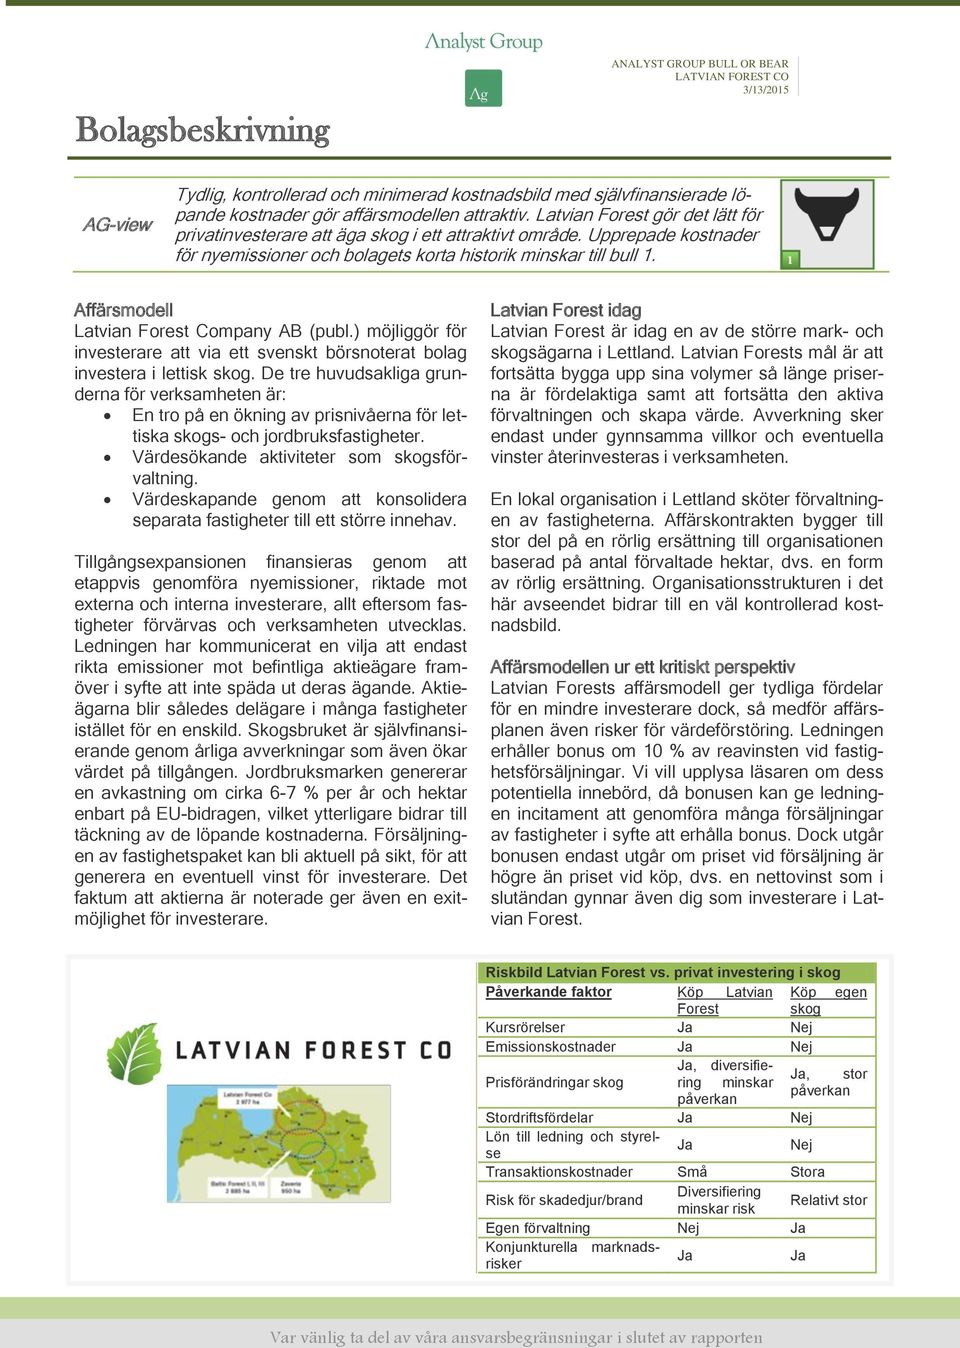 Affärsmodell Latvian Forest Company AB (publ.) möjliggör för investerare att via ett svenskt börsnoterat bolag investera i lettisk skog.